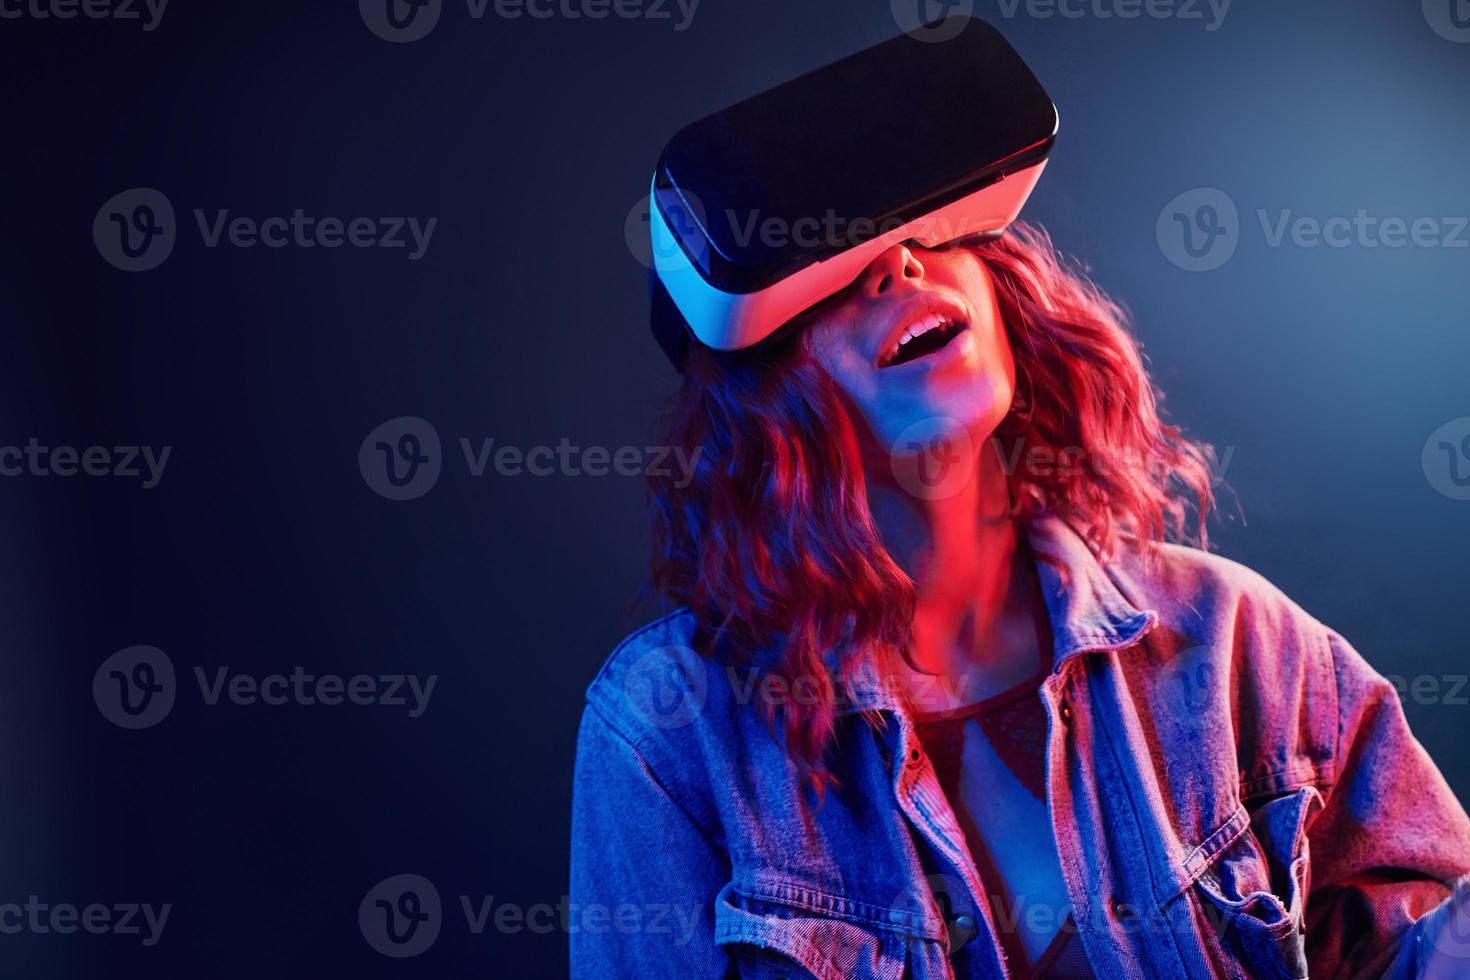 ansiktsbehandling uttryck av ung flicka med virtuell verklighet glasögon på huvud i röd och blå neon i studio foto